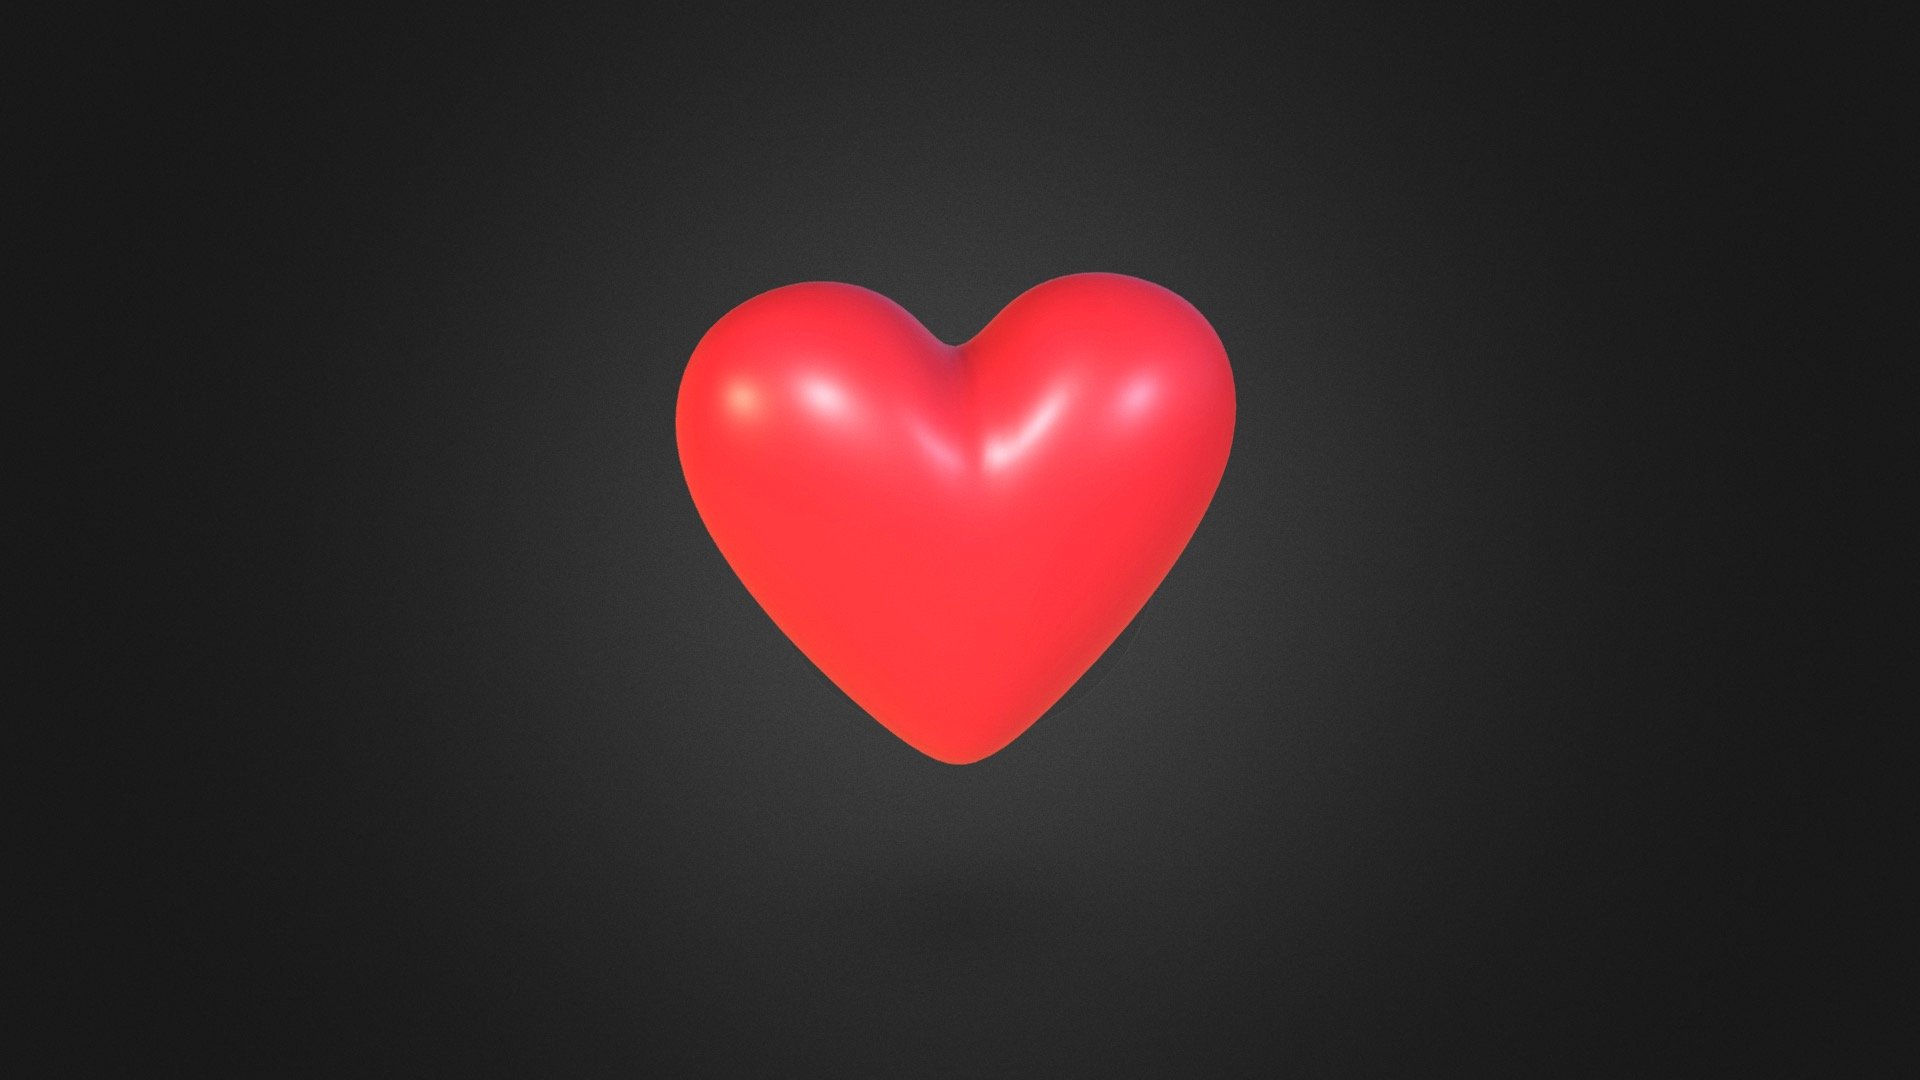 Red Heart. Modeled in Blender - Red Heart - Buy Royalty Free 3D model by burakonur99 3d model